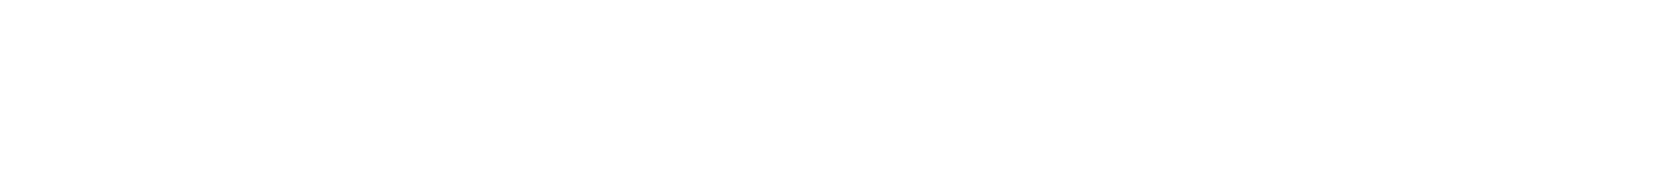 Chubb logo grand pour les fonds sombres (PNG transparent)